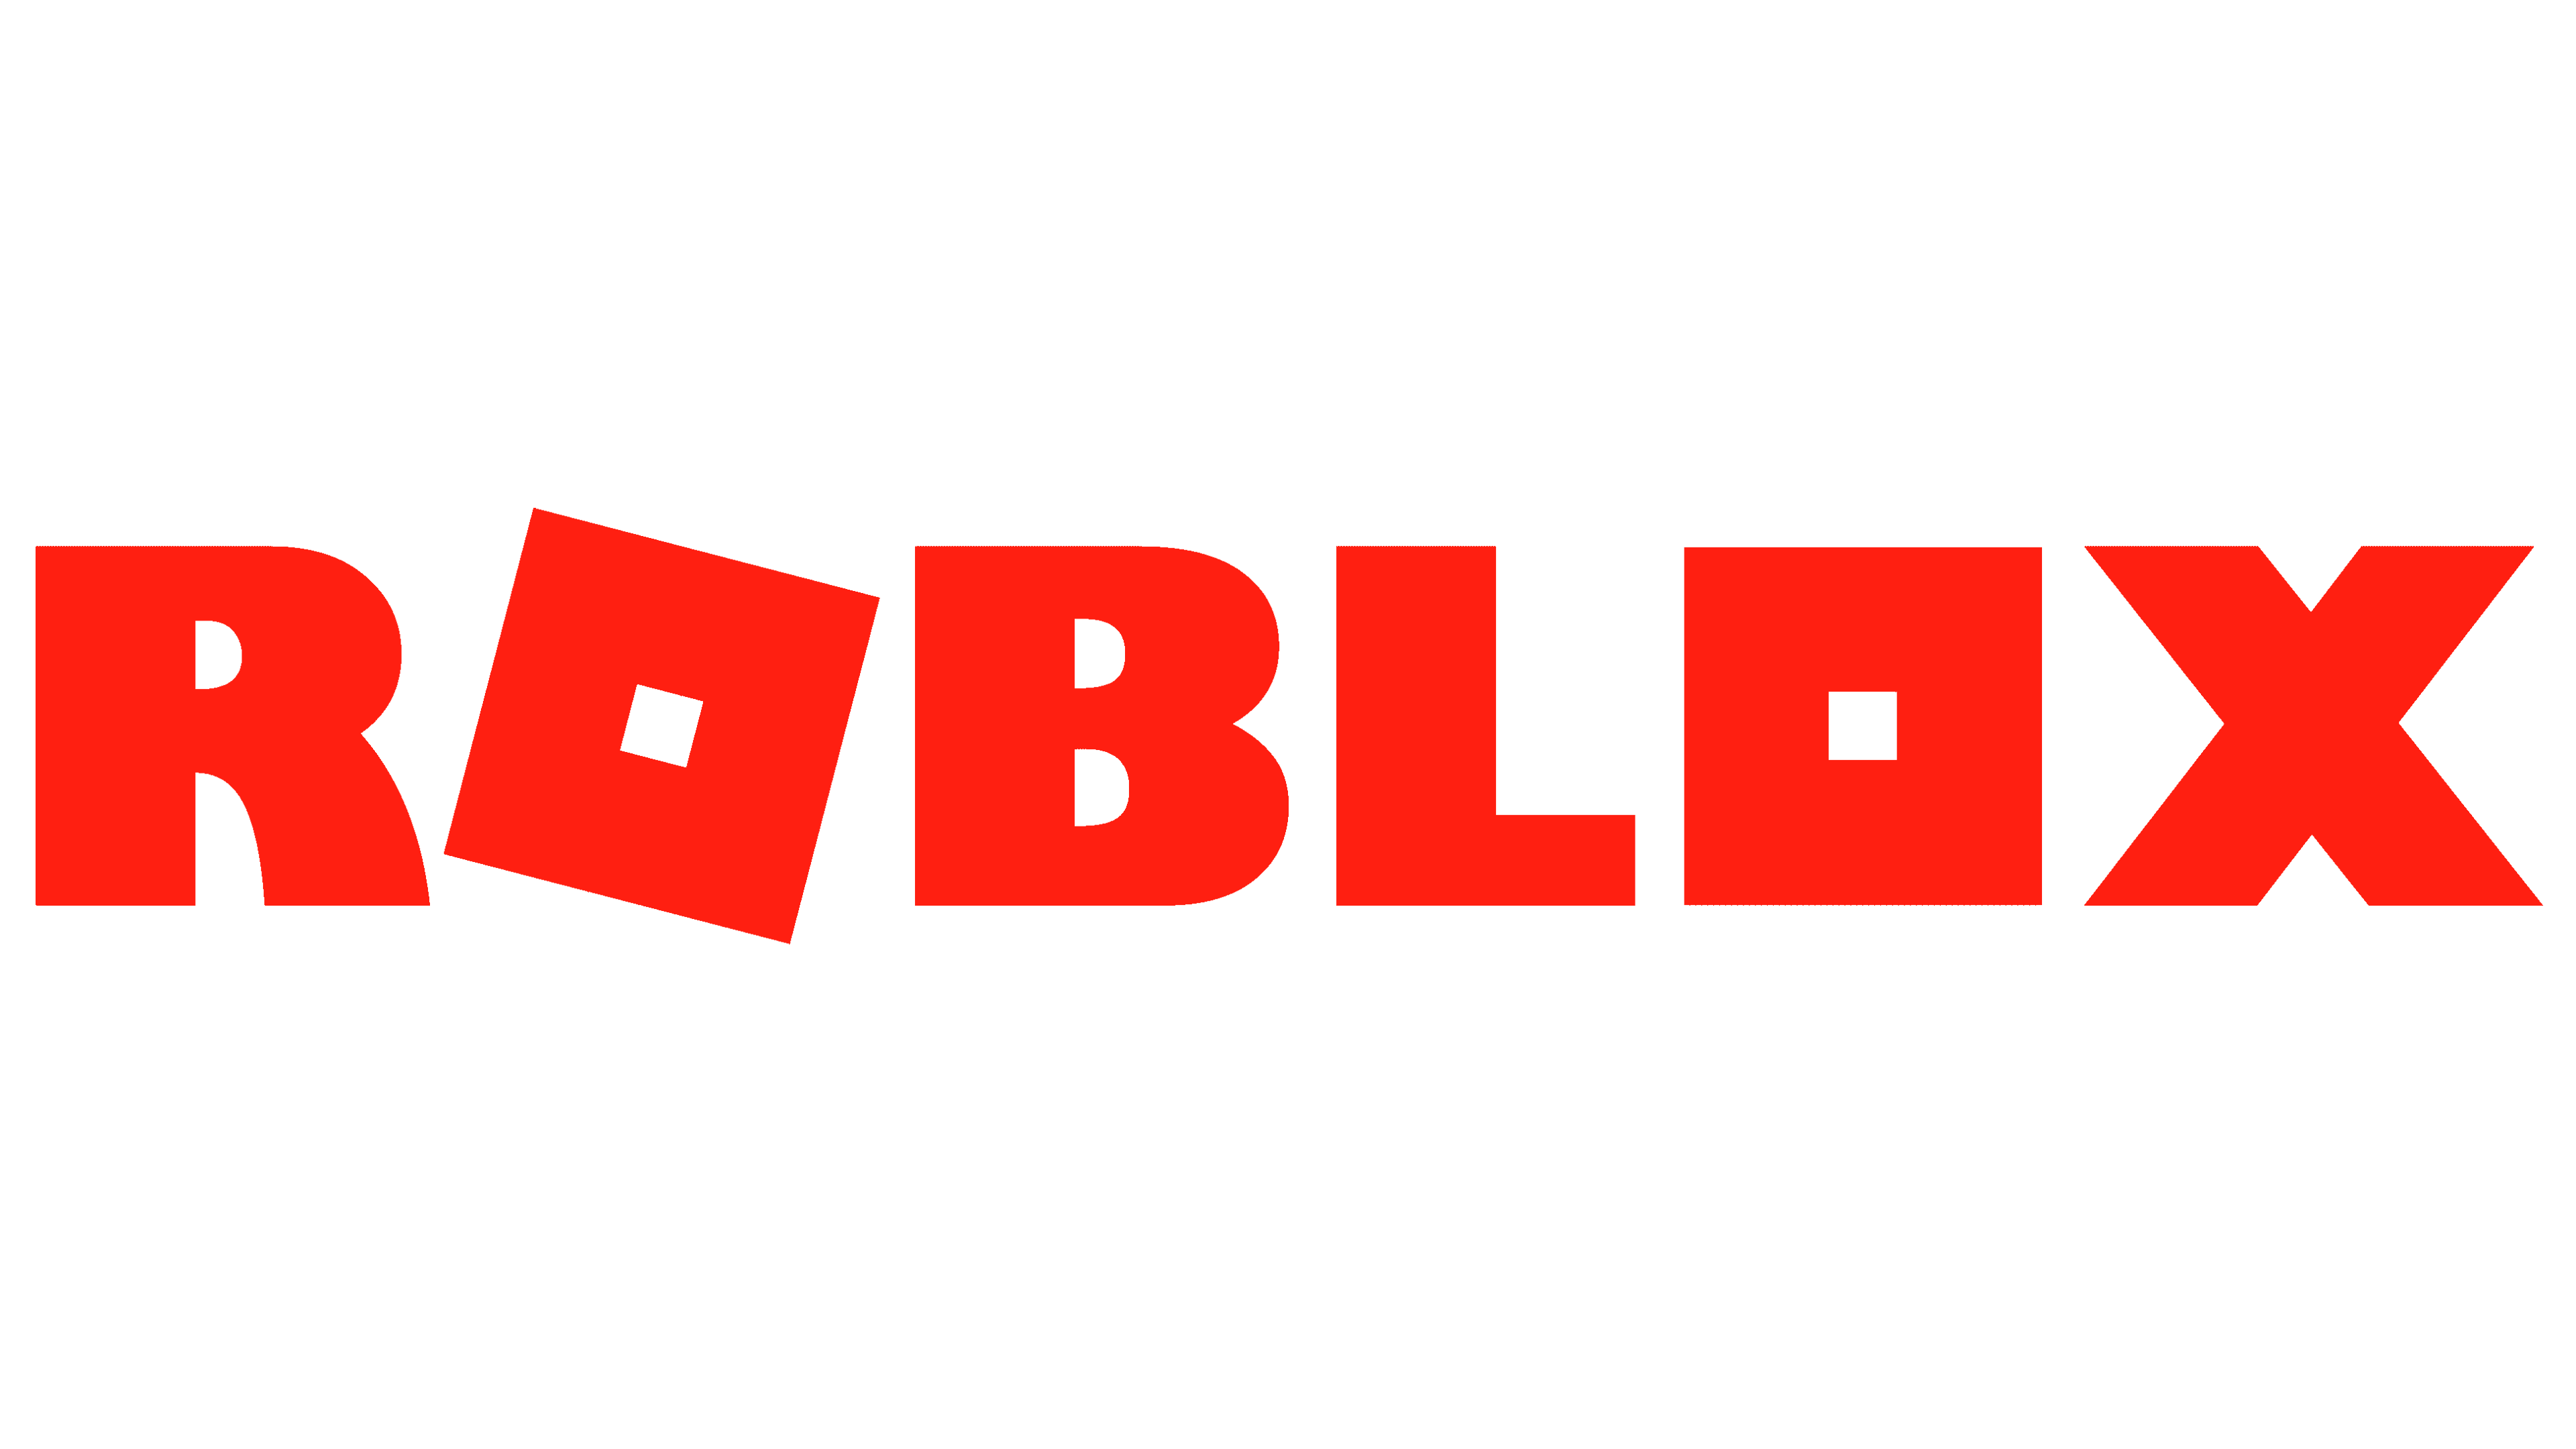 Evolução da logo do Roblox #superofcyt #robloxgames #roblox #robloxsad